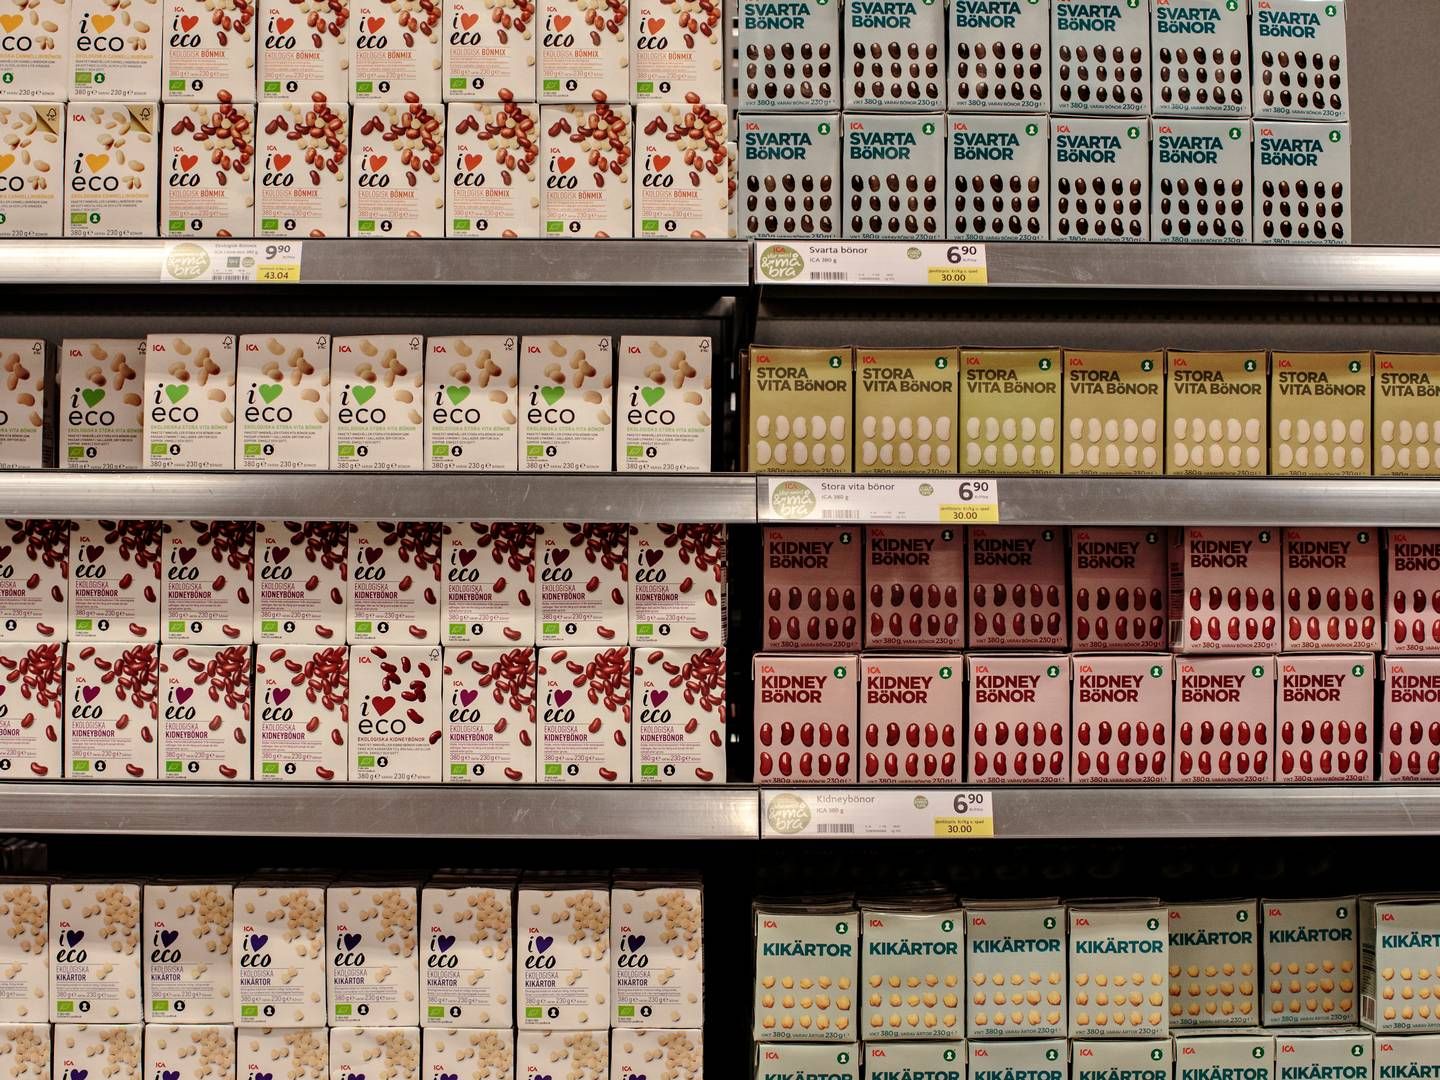 Der lader ikke til at være udsigt til billigere priser i de svenske dagligvarebutikker. | Foto: Miriam Dalsgaard